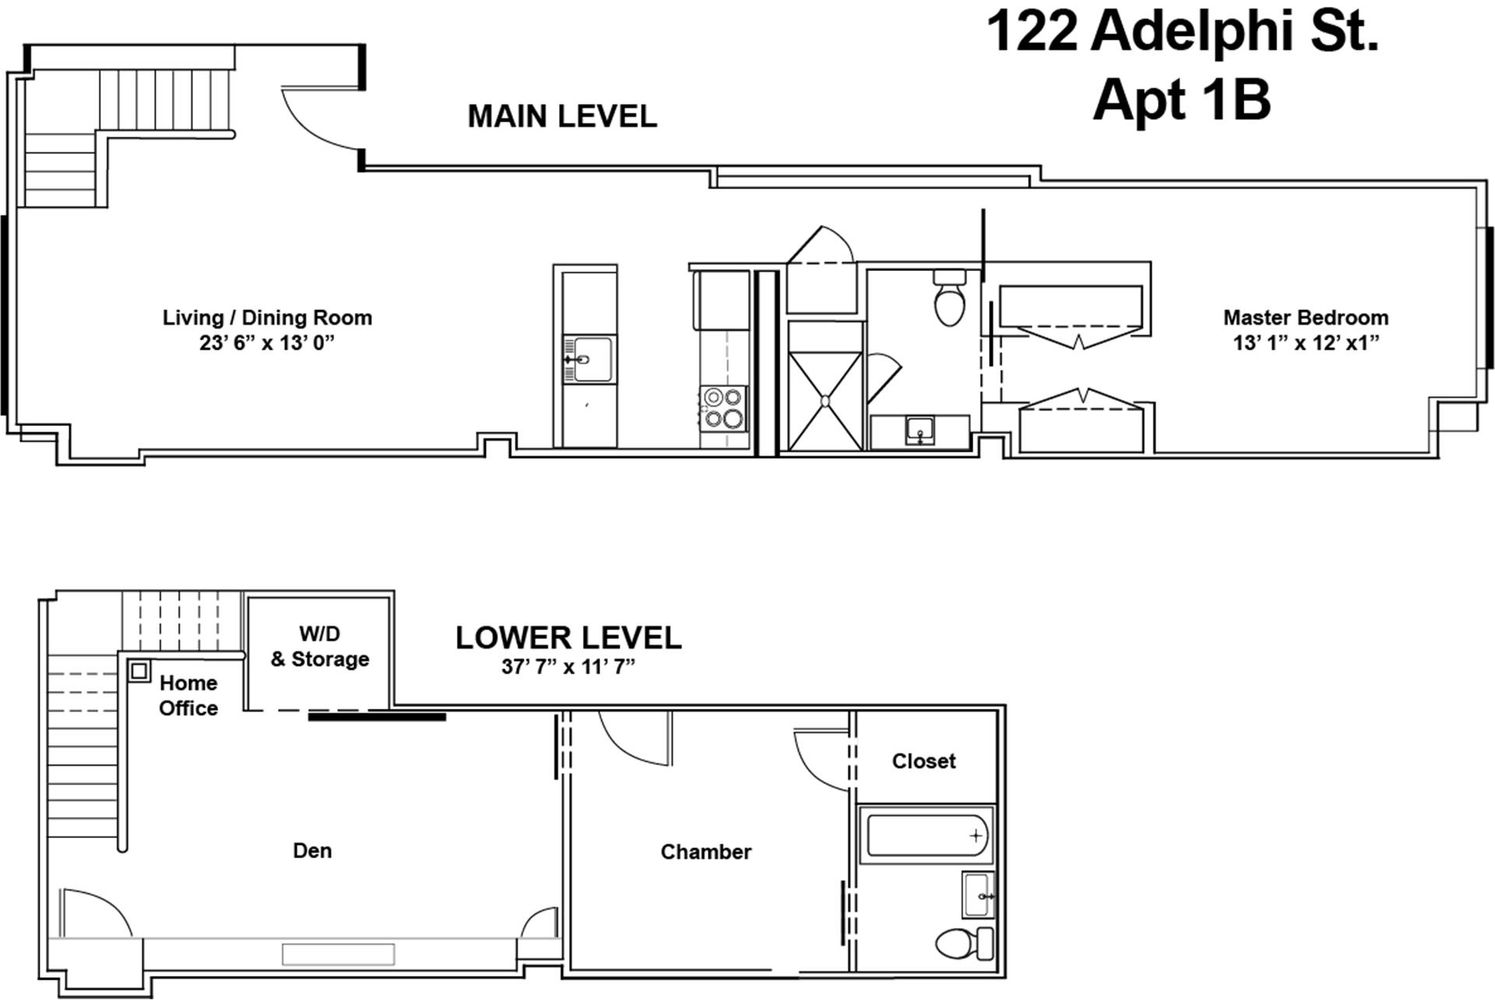 Floorplan for 122 Adelphi Street, 1B